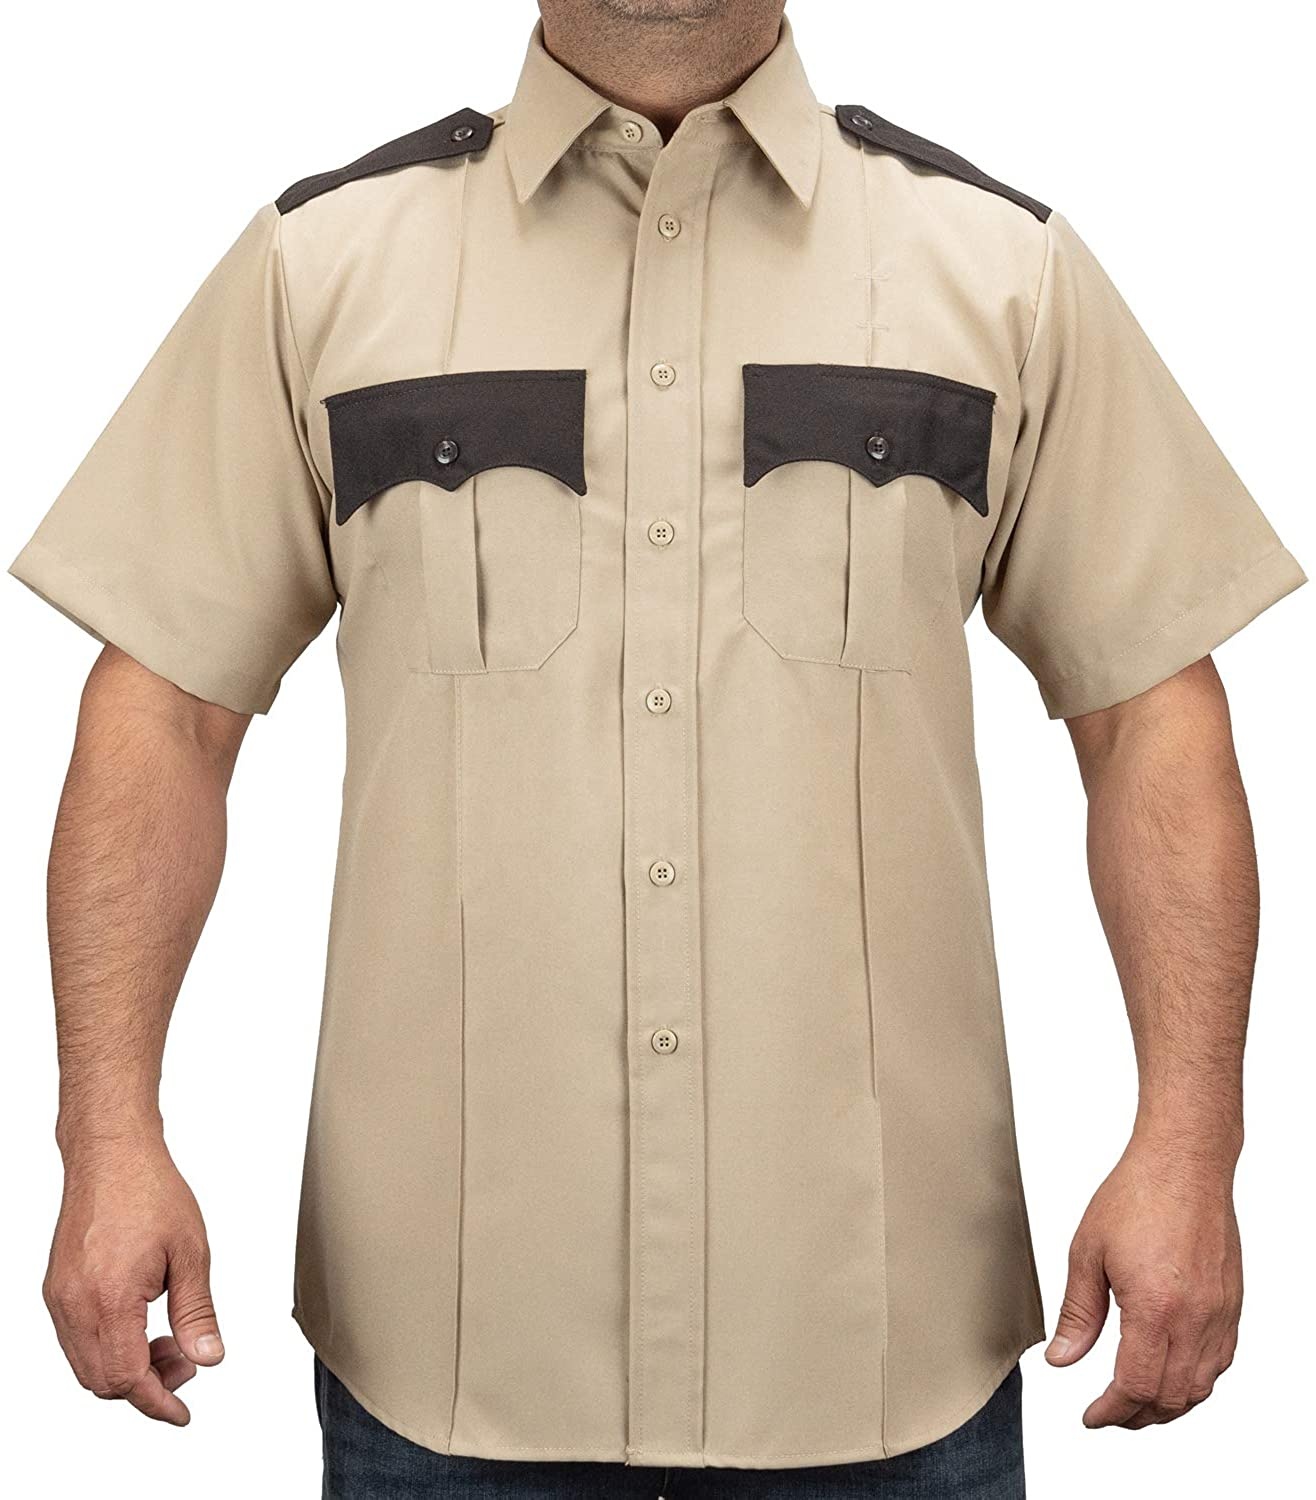 Uniforme de guardia de camisas de seguridad para hombres de manga corta con diseño personalizado con bolsillos